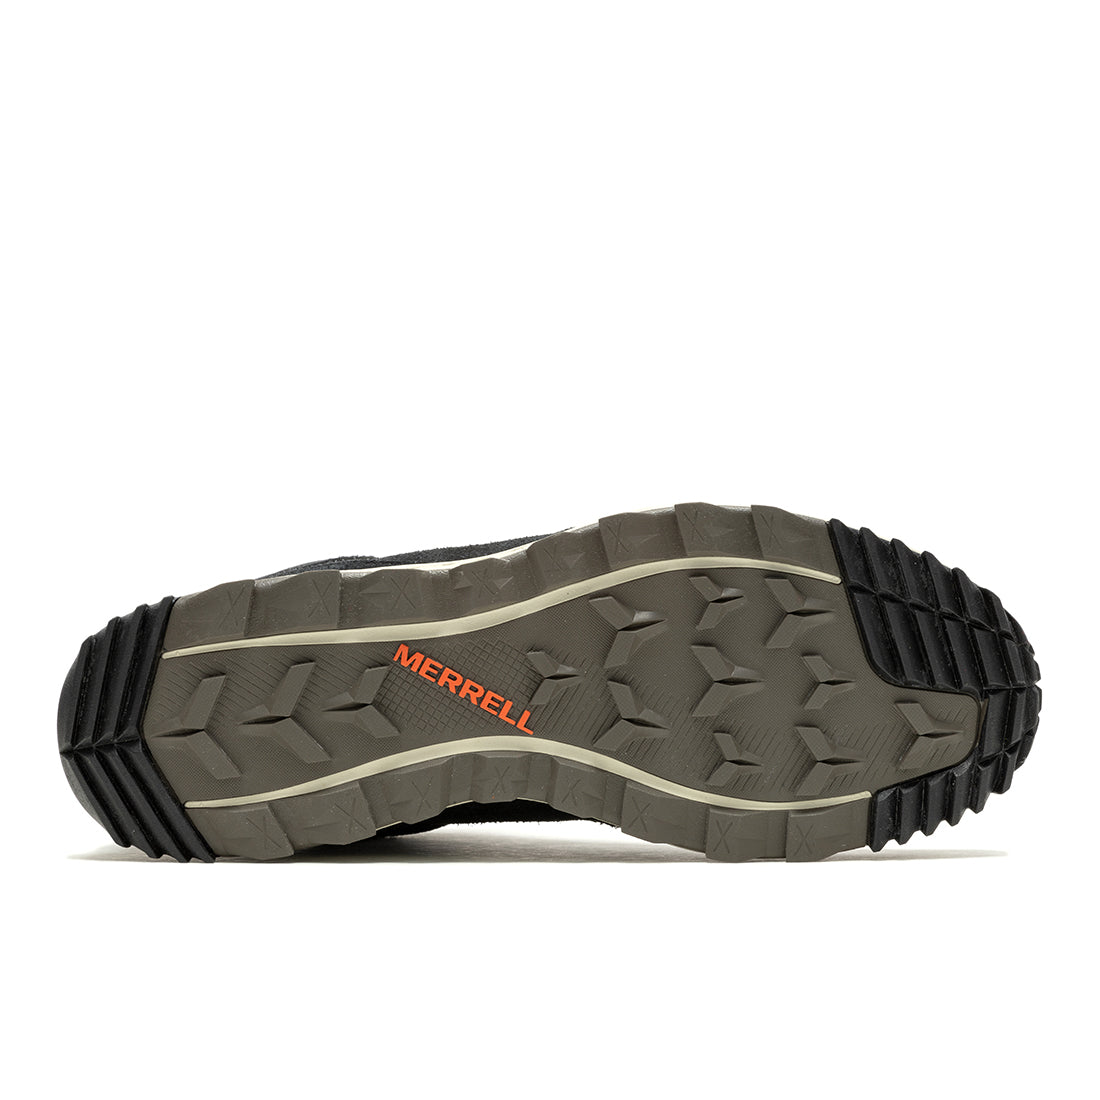 Wildwood Mid Ltr Waterproof-Black Mens Trail Running Shoes